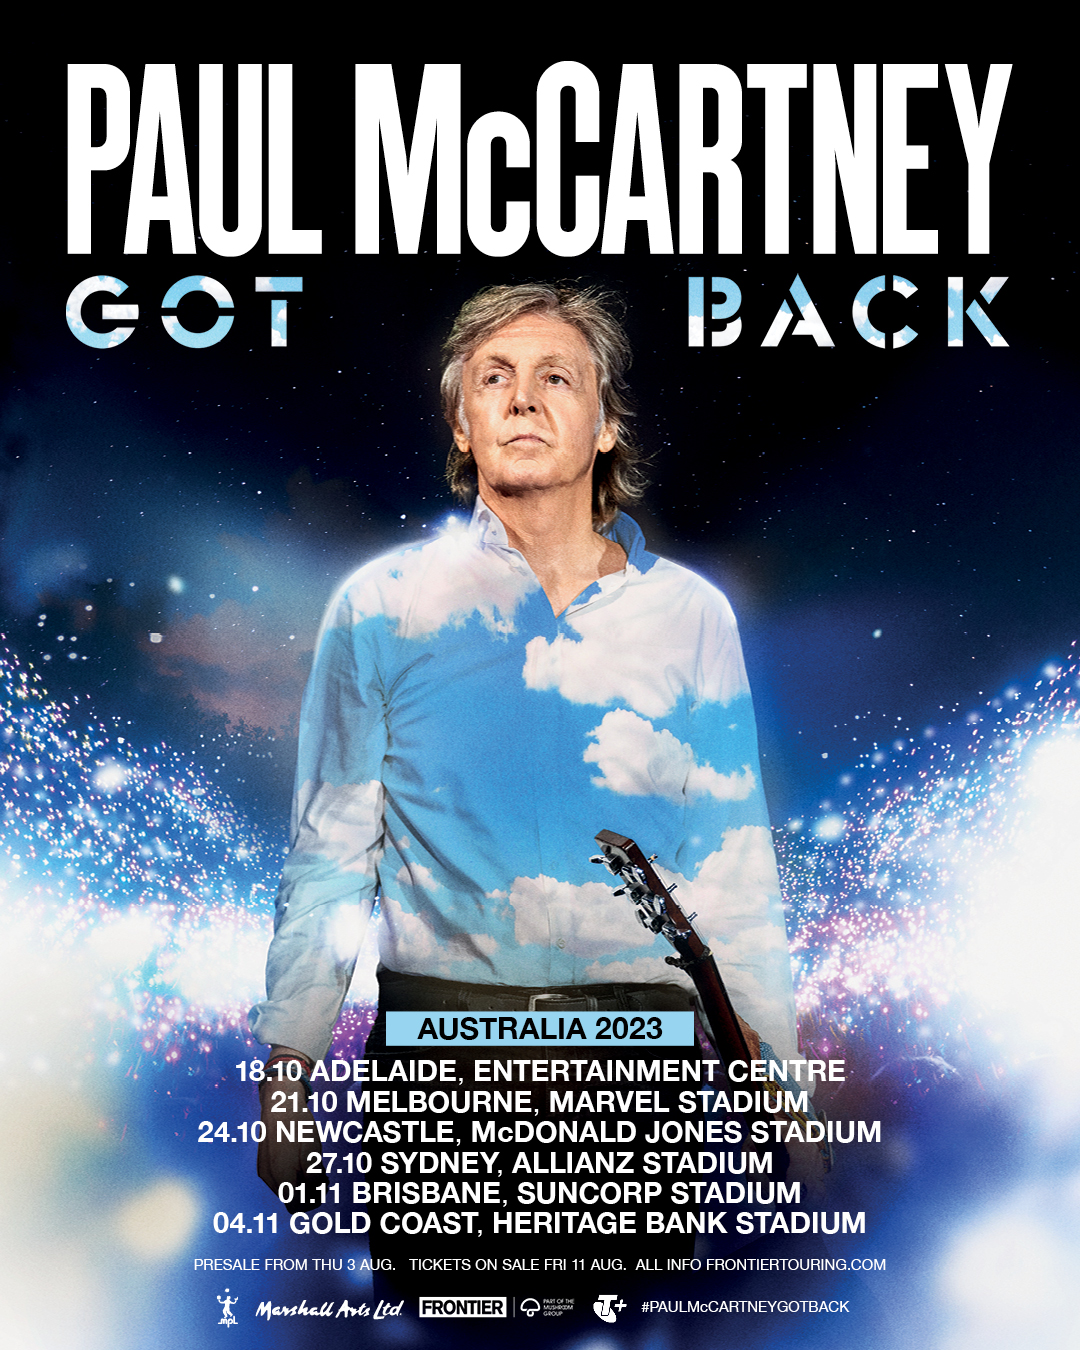 Australian leg for the "Got Back" tour announced • The Paul McCartney